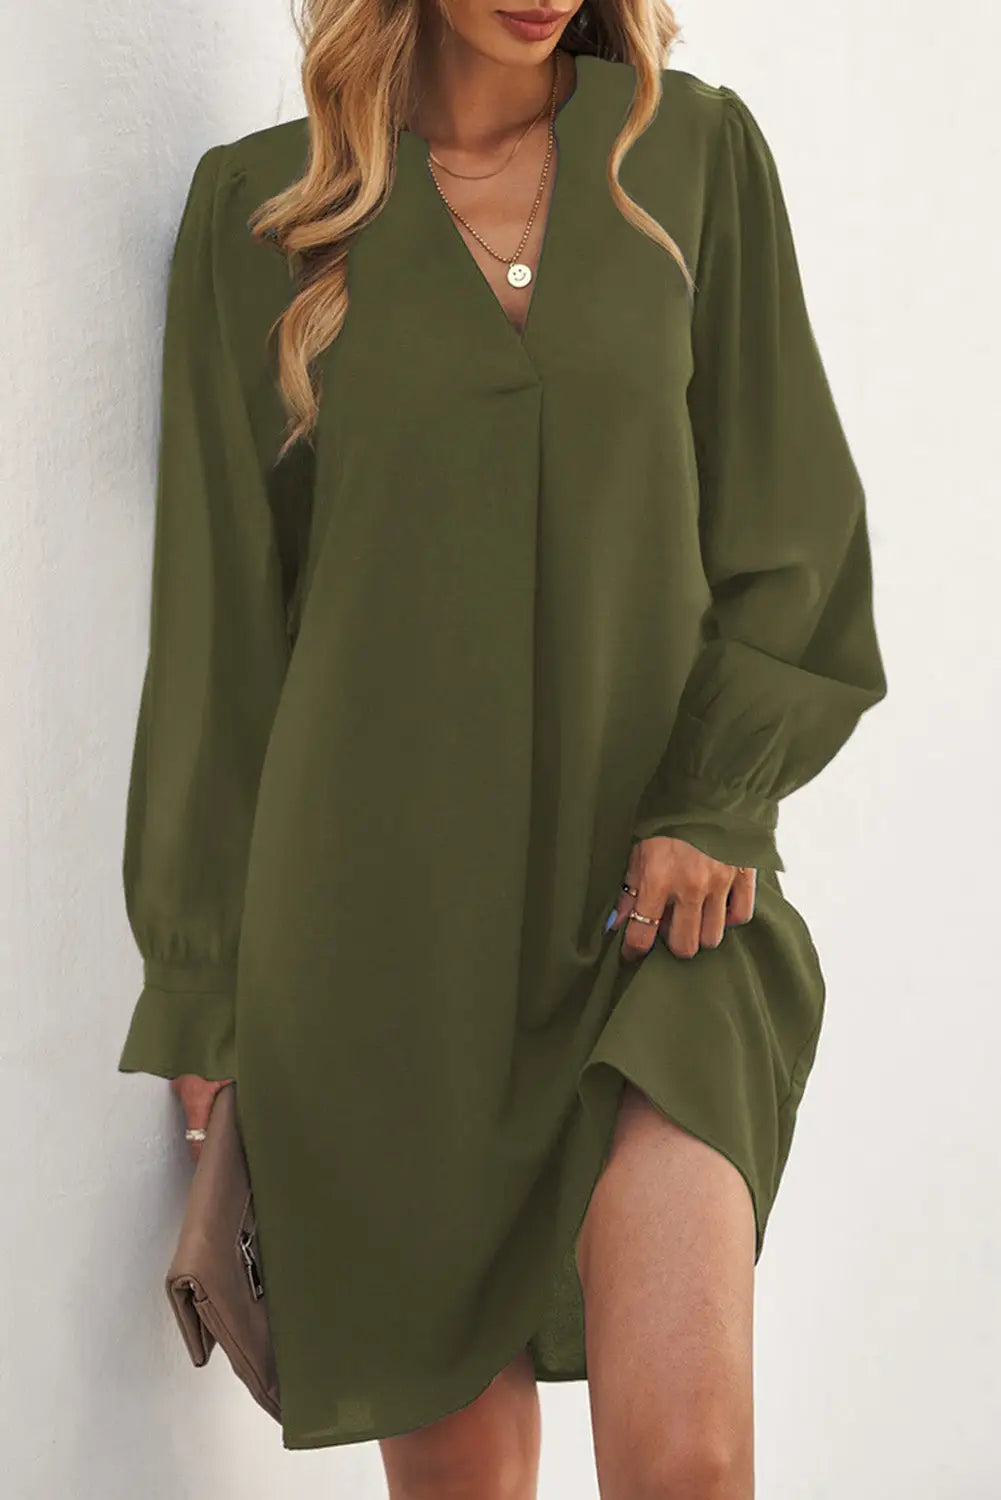 Black split v neck ruffled sleeves shirt dress - green / s / 100% polyester - mini dresses